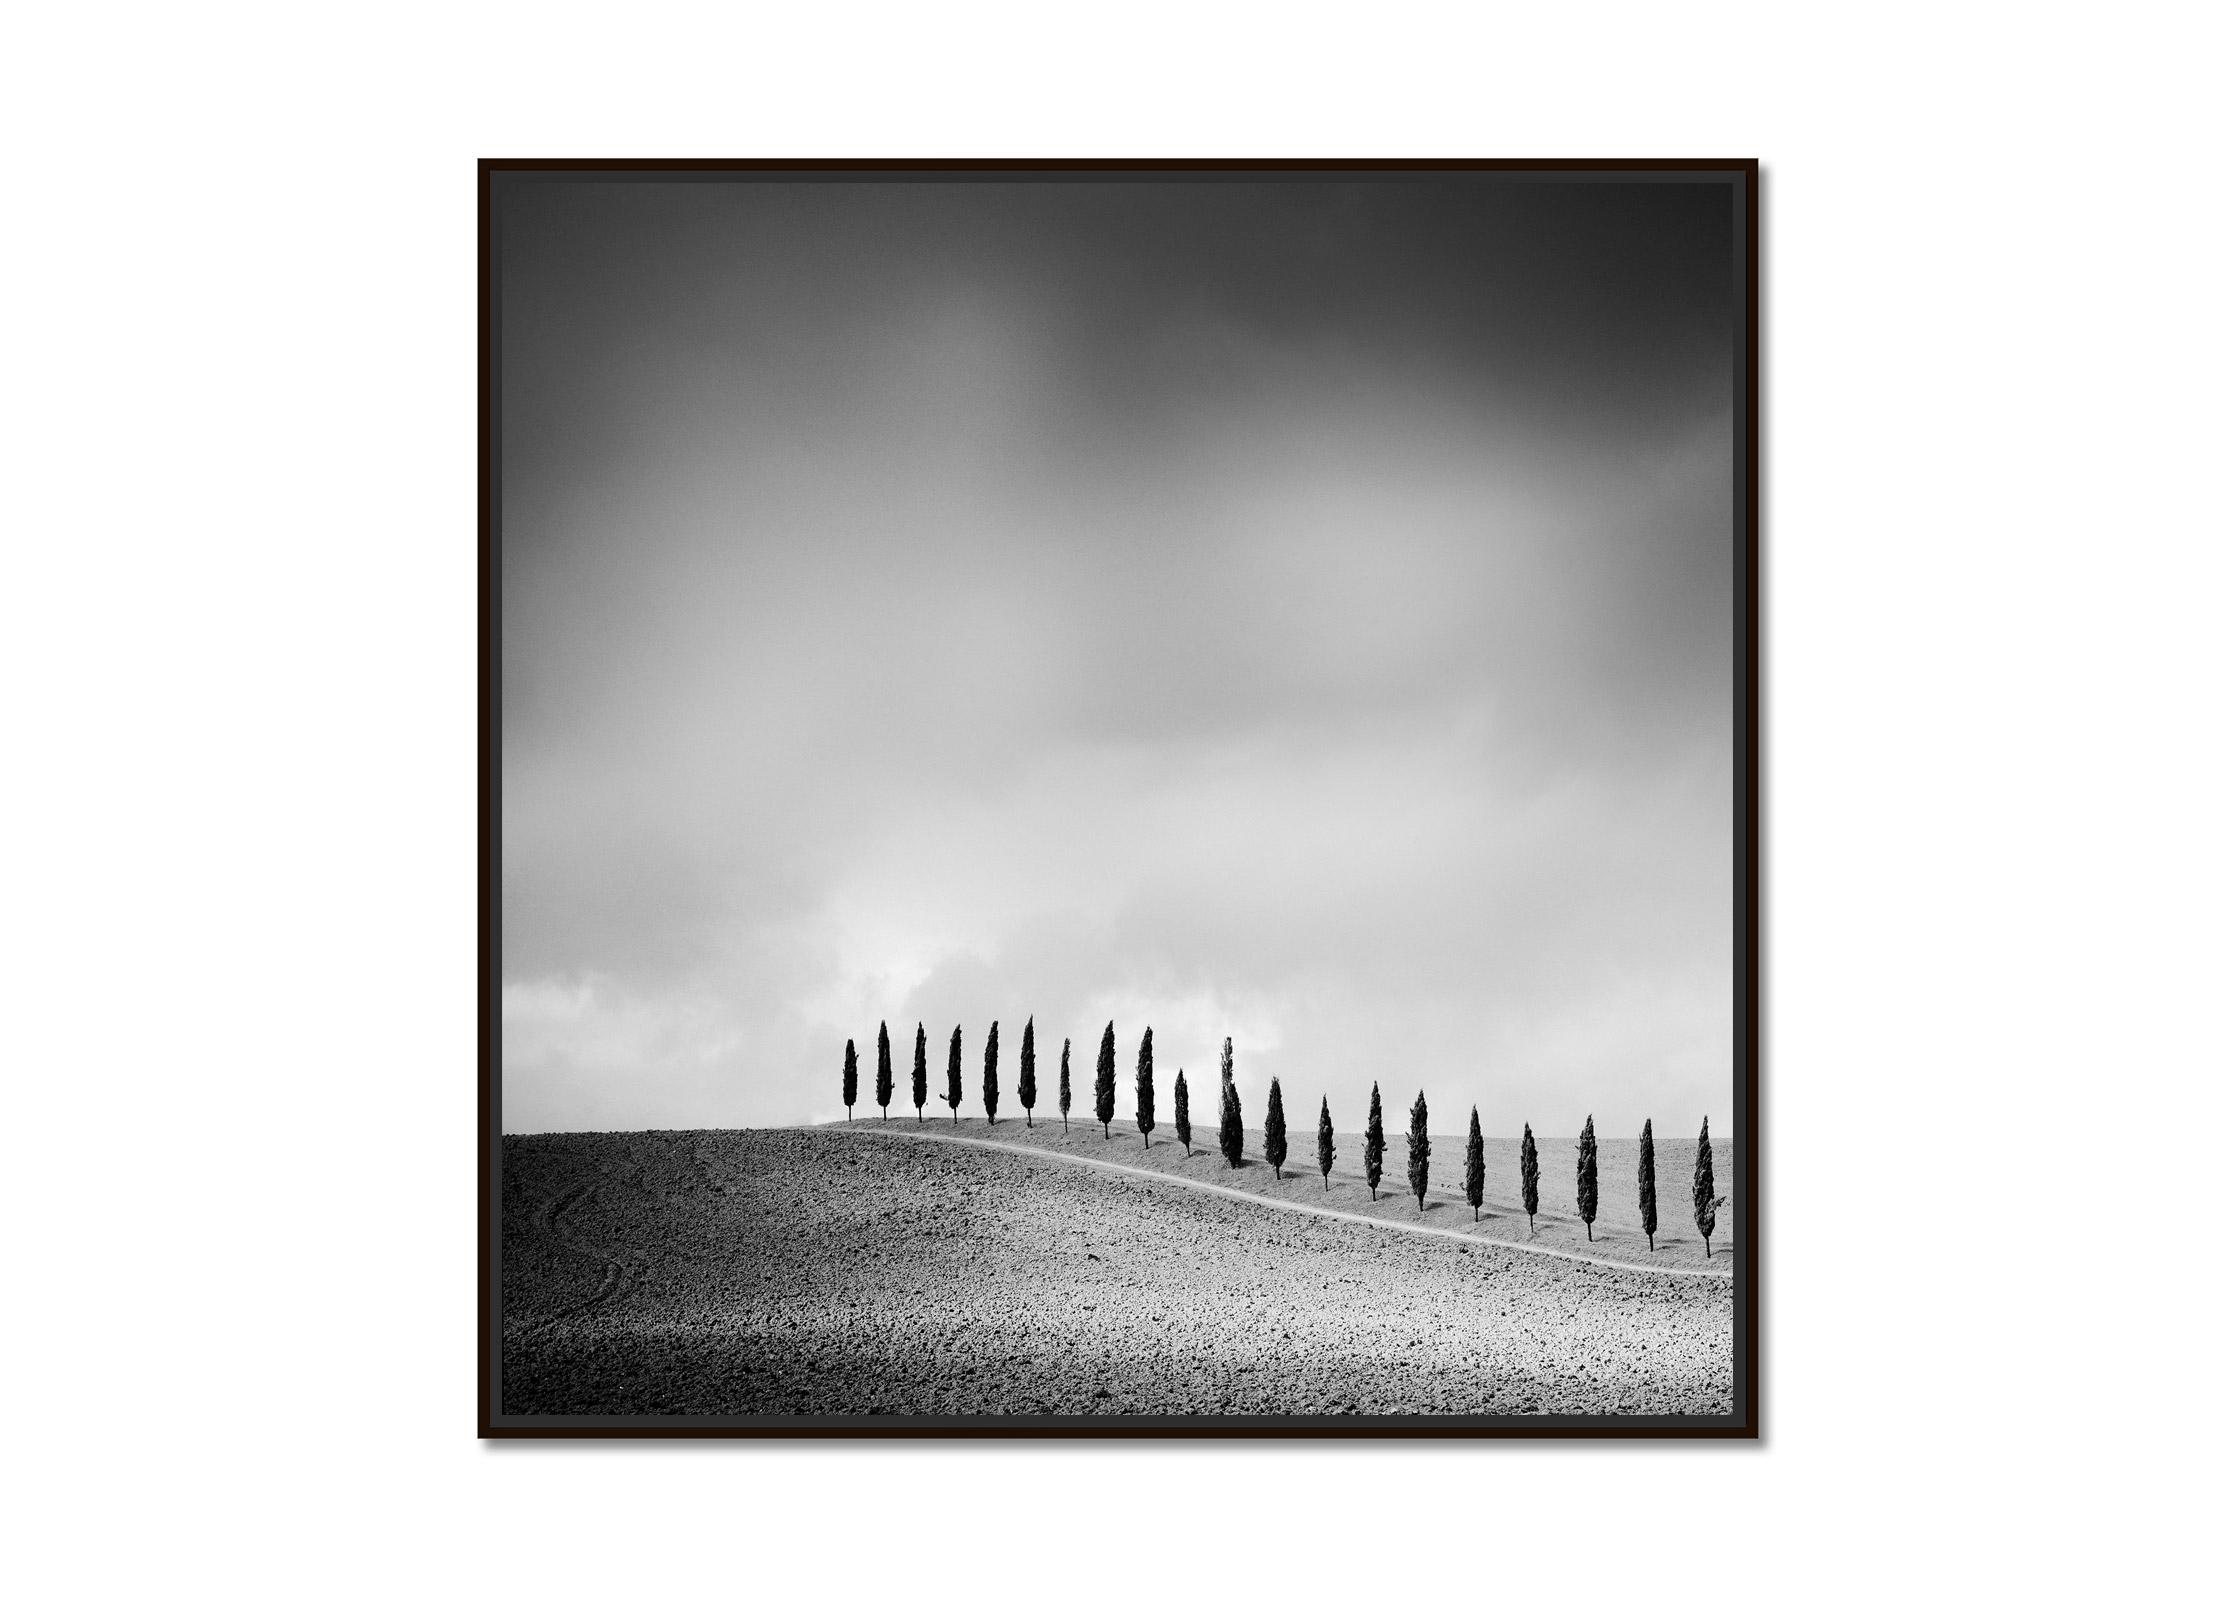 The Row of Cypress Trees, Toscane, photographie d'art en noir et blanc, paysage - Photograph de Gerald Berghammer